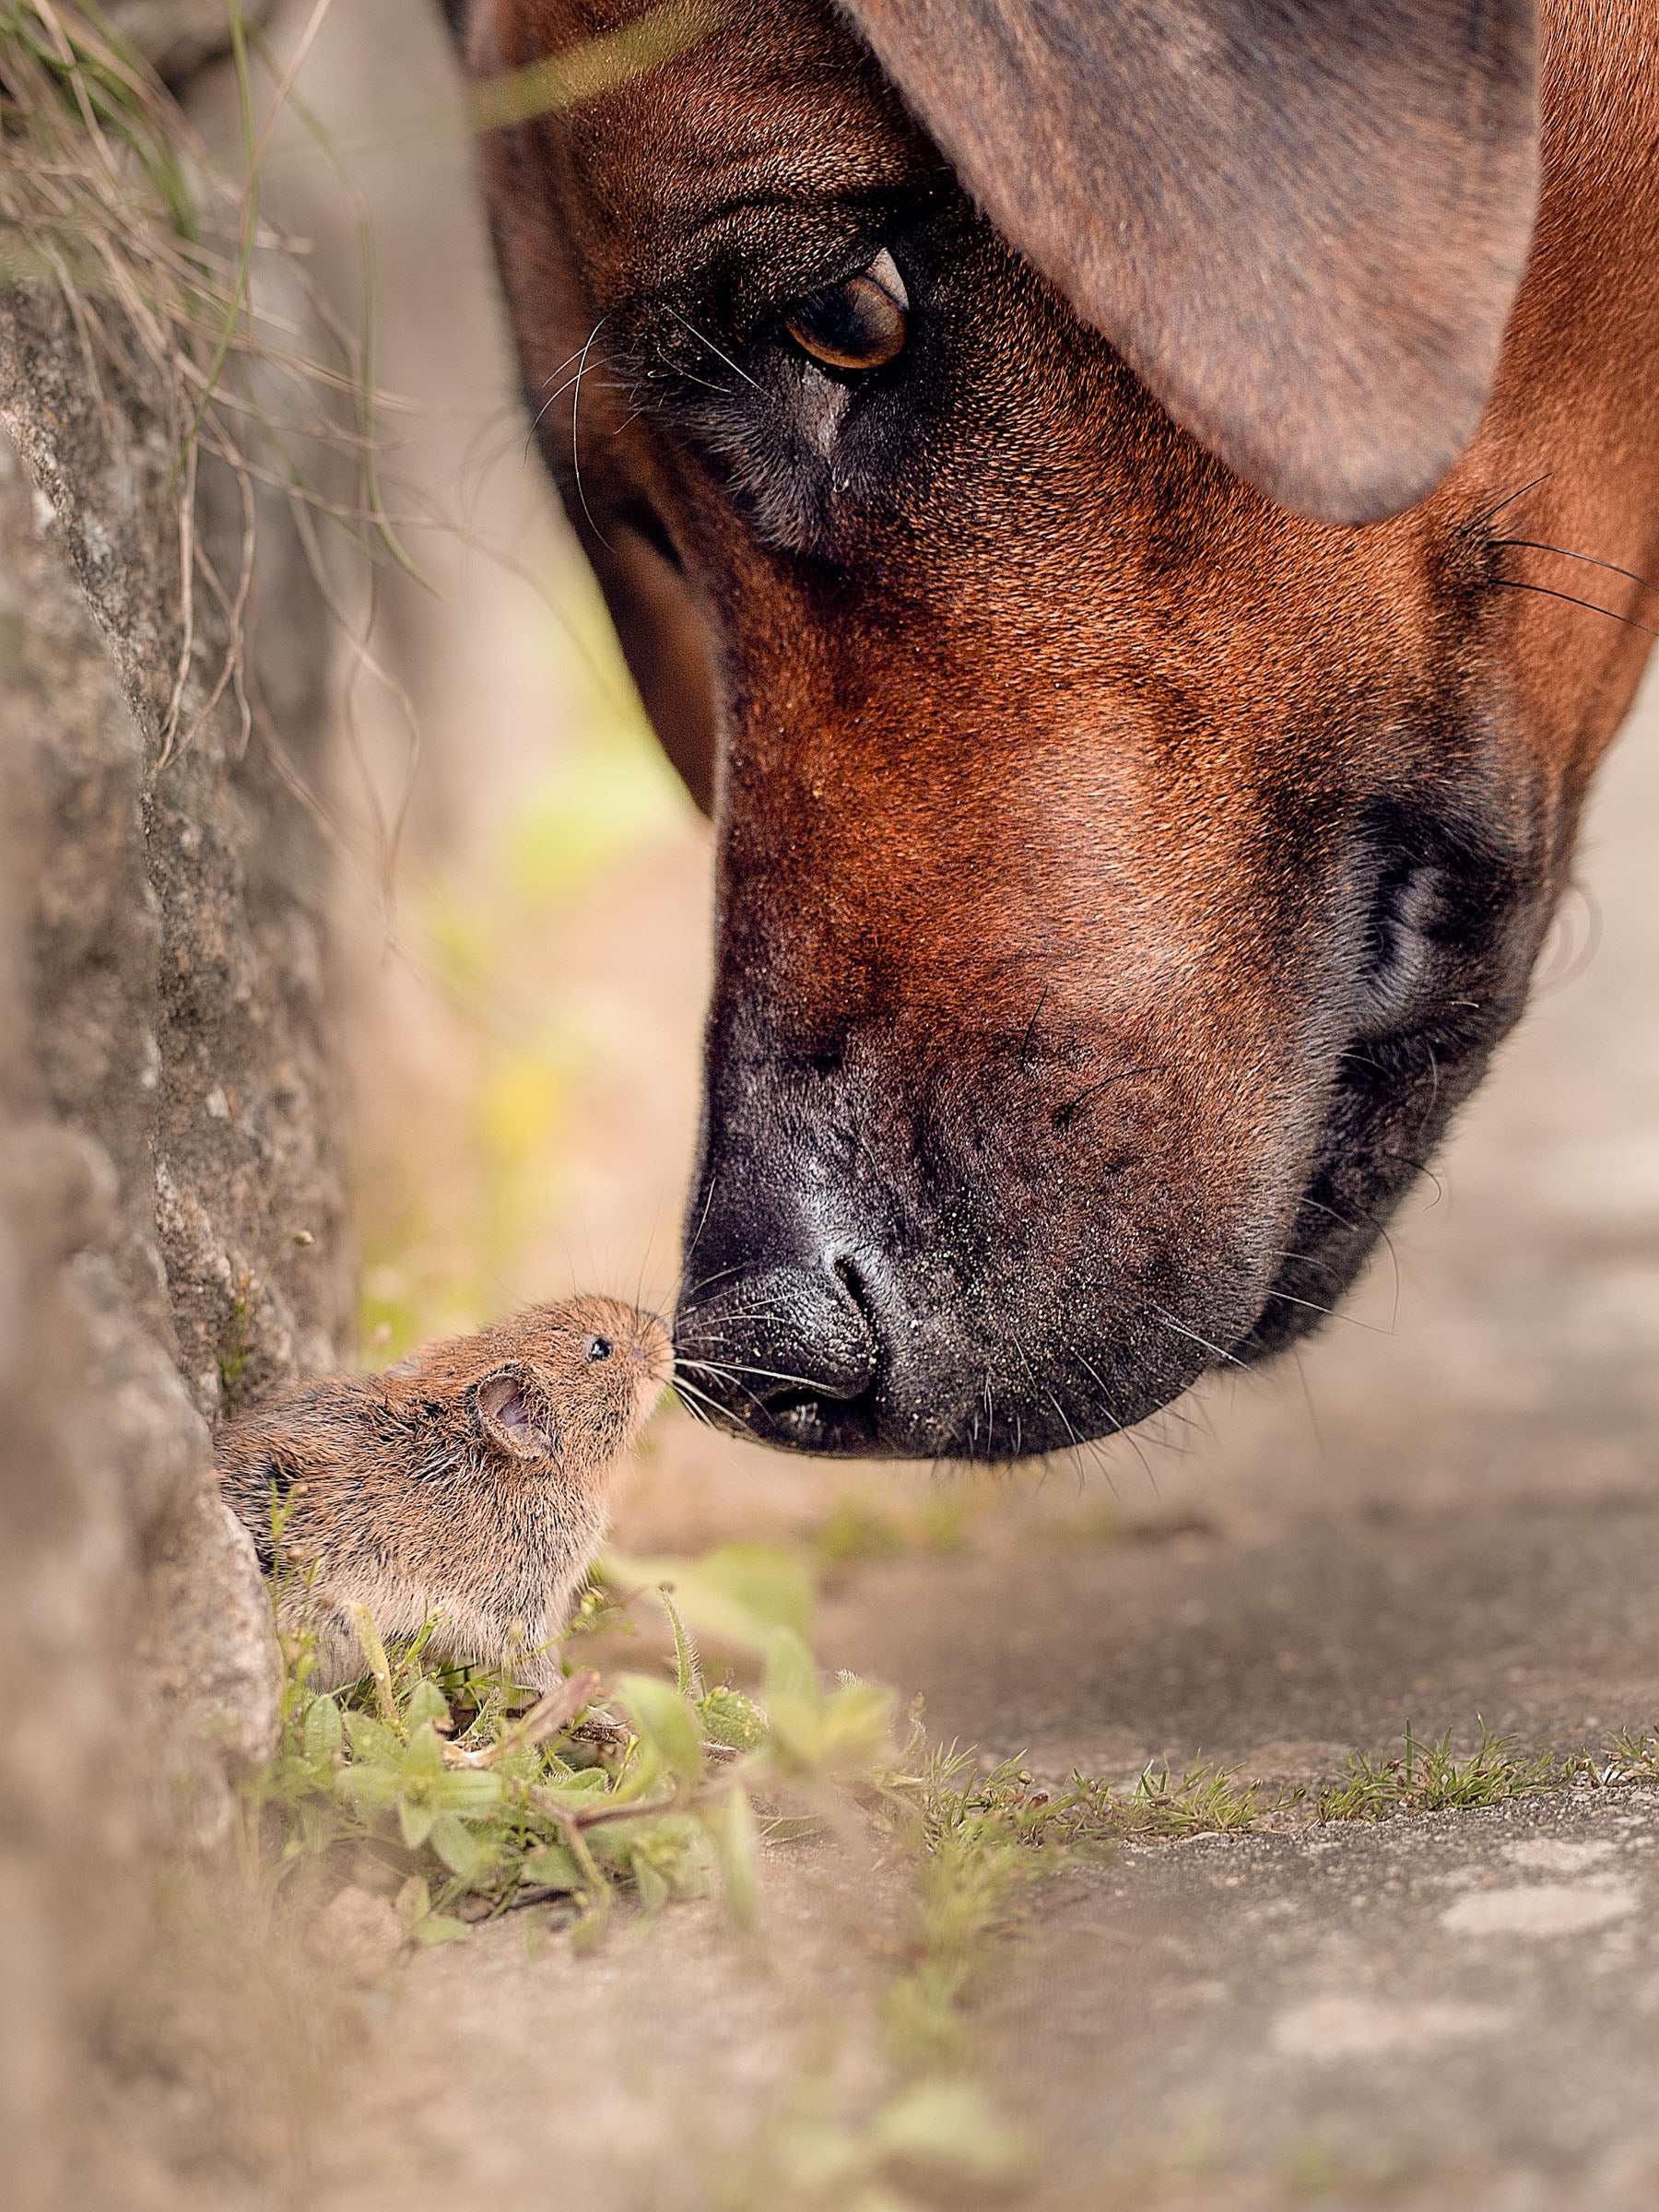 כלב גדול מניח את אפו עד אפו של עכבר זעיר